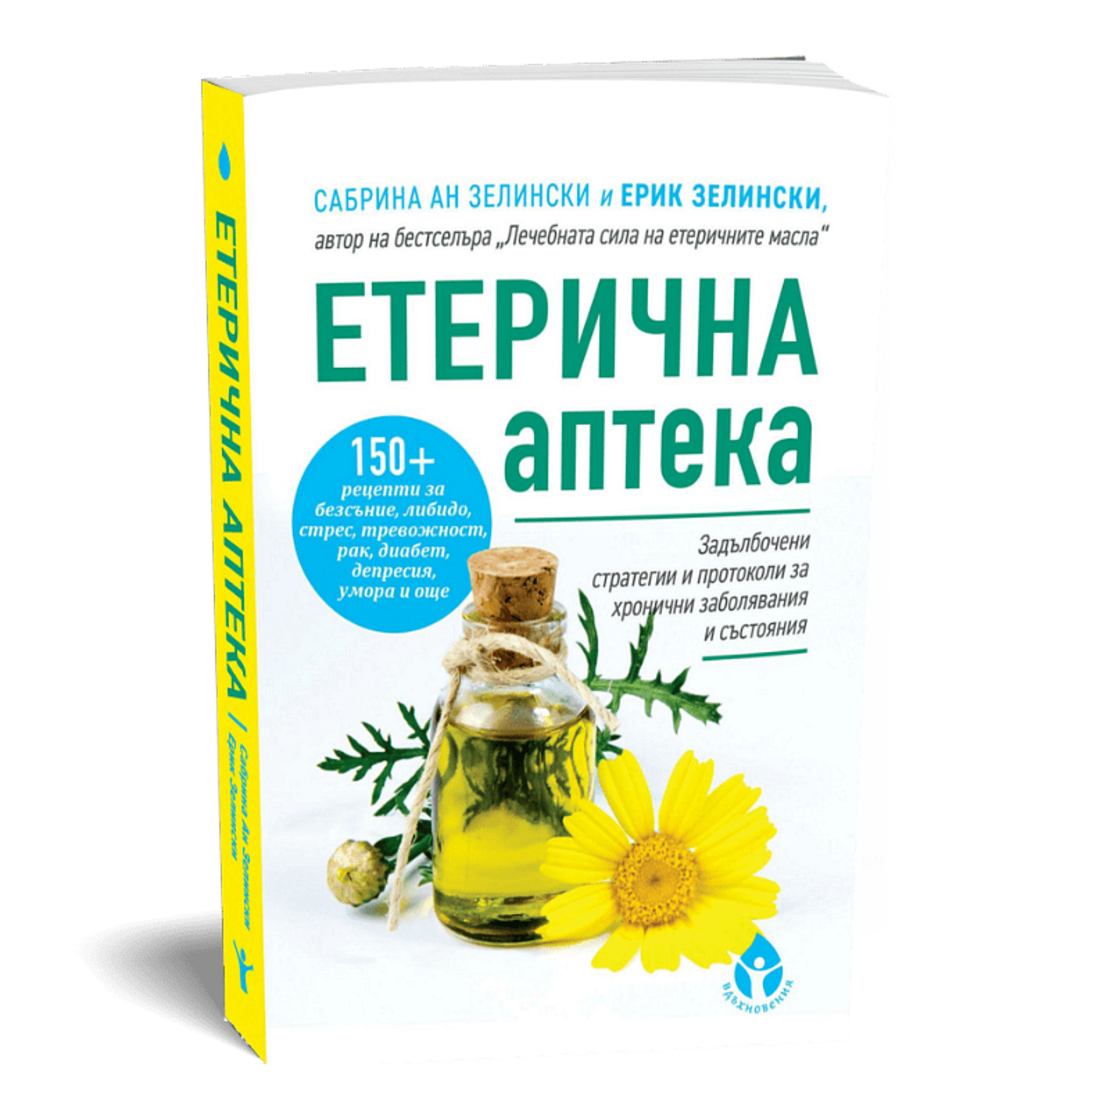 Етерична аптека от Сабрина Ан Зелински и д-р Ерик Зелински